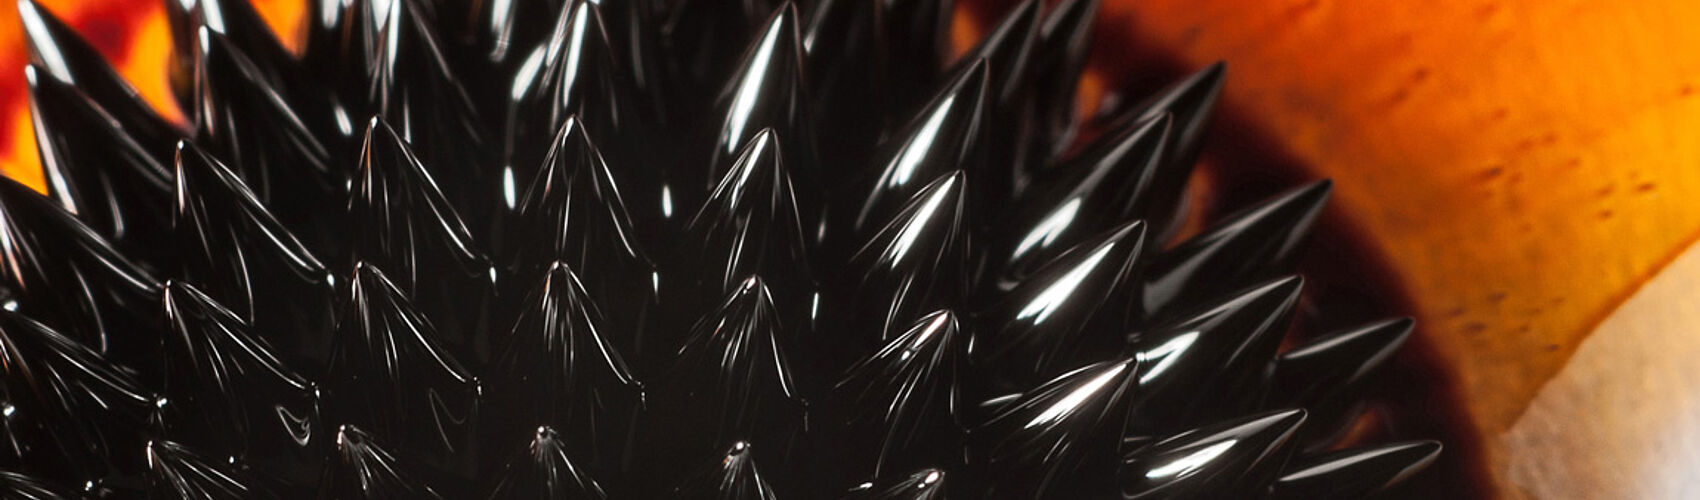 Die Teilchen eines Ferrofluides richten sich nach den Feldlinien eines magnetischen Feldes aus.